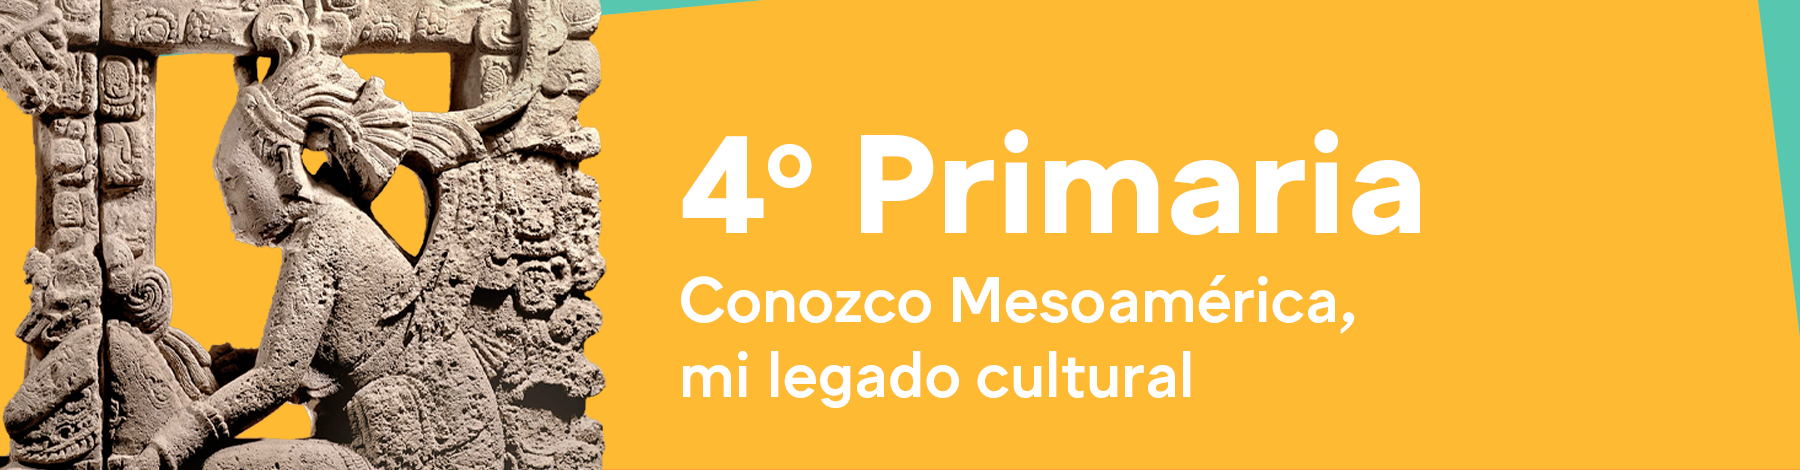 Primaria | Museo Amparo, Puebla | Museo Amparo, Puebla.